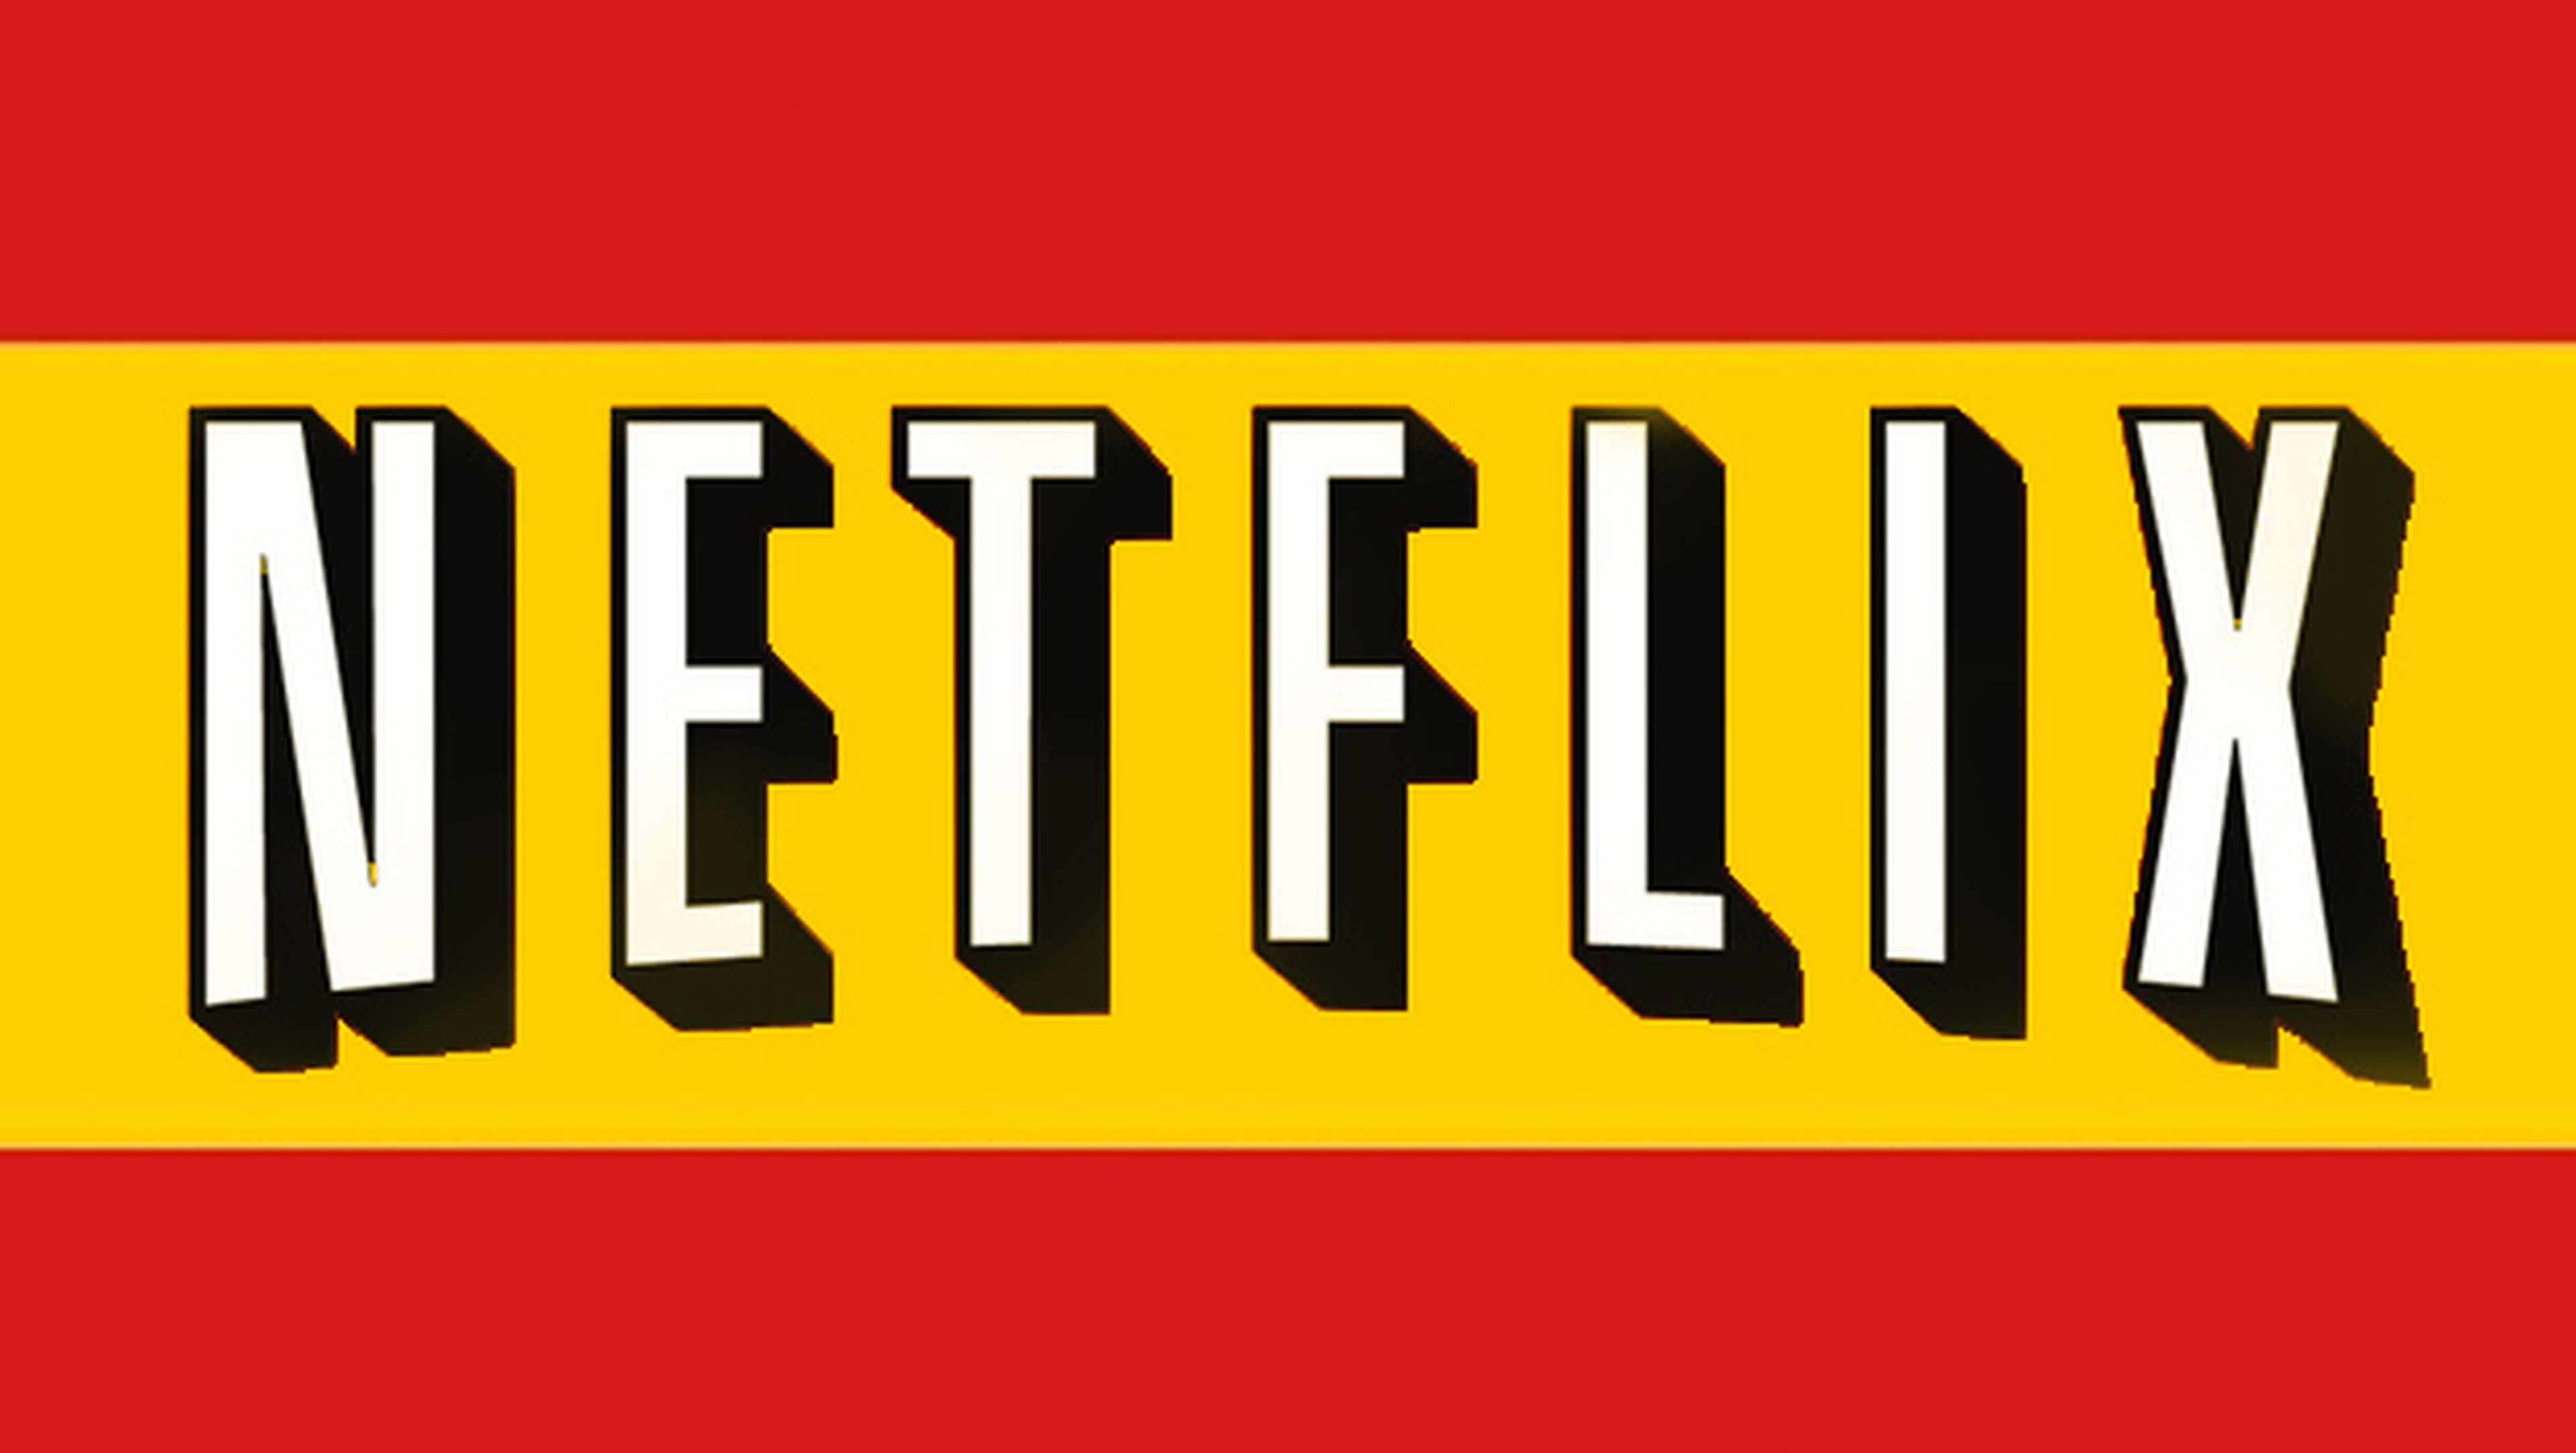 Netflix, el mayor videoclub online del mundo, anuncia su llegada a España tras establecerse en 13 países europeos.